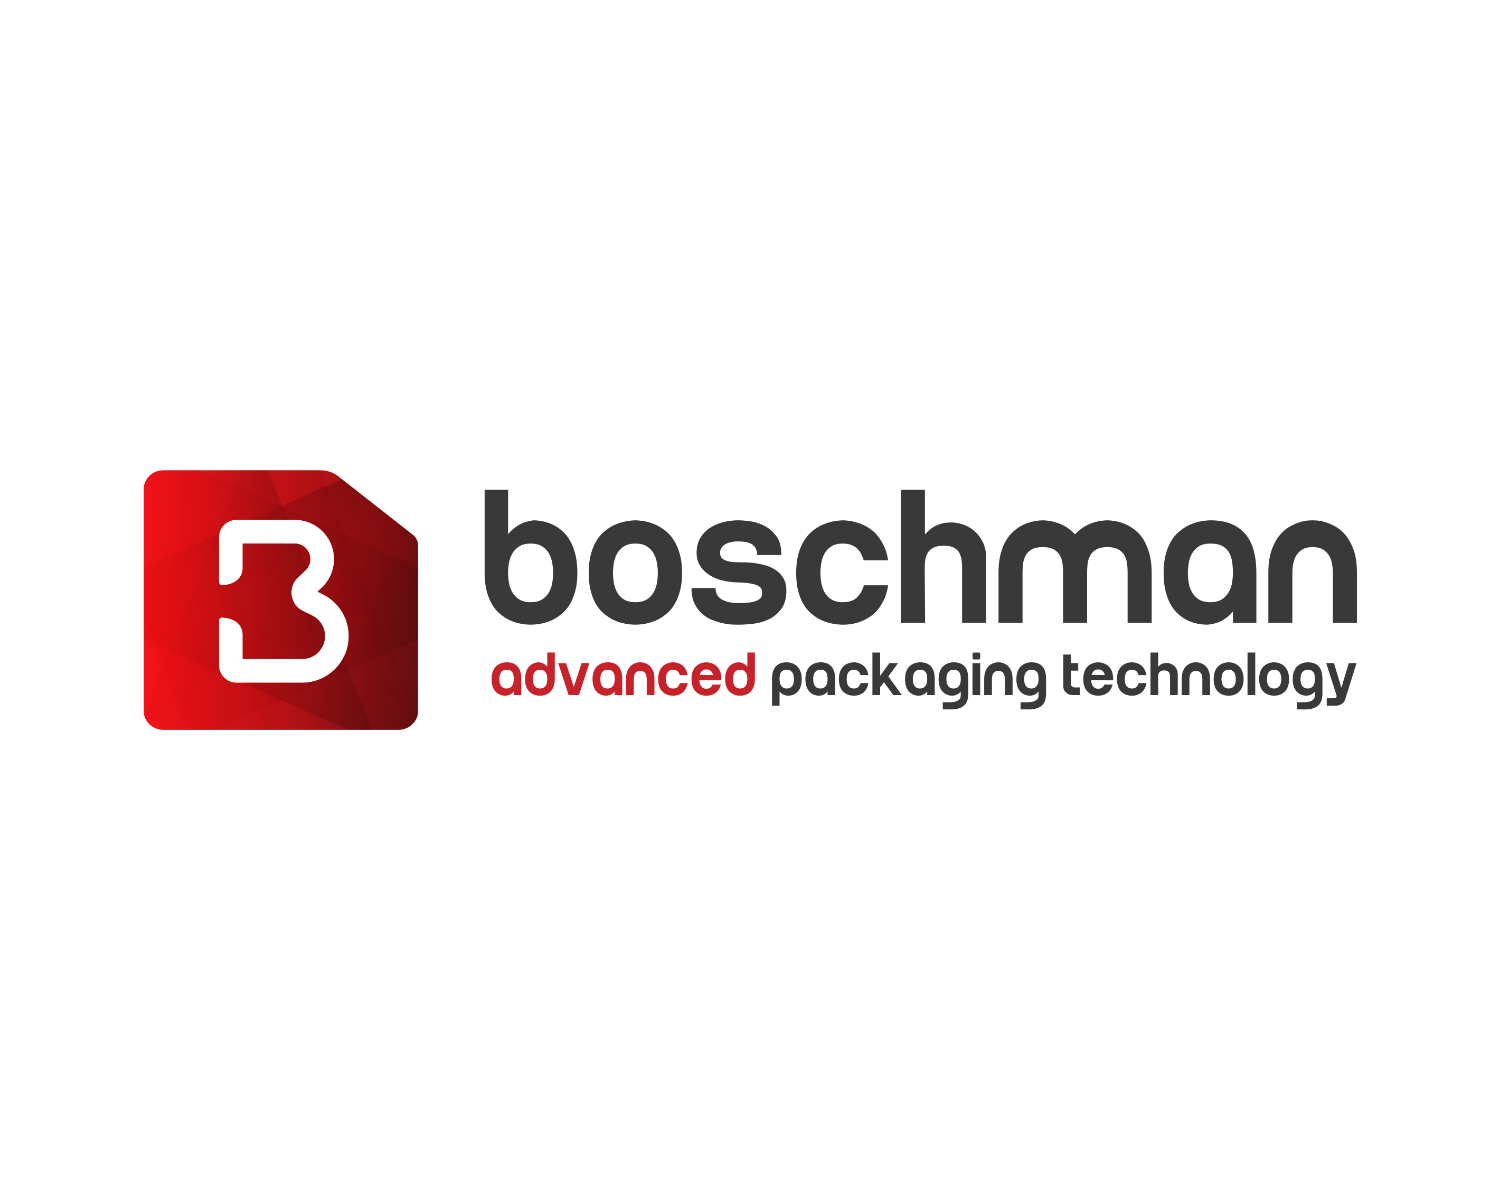 Boschman advanced packaging technology